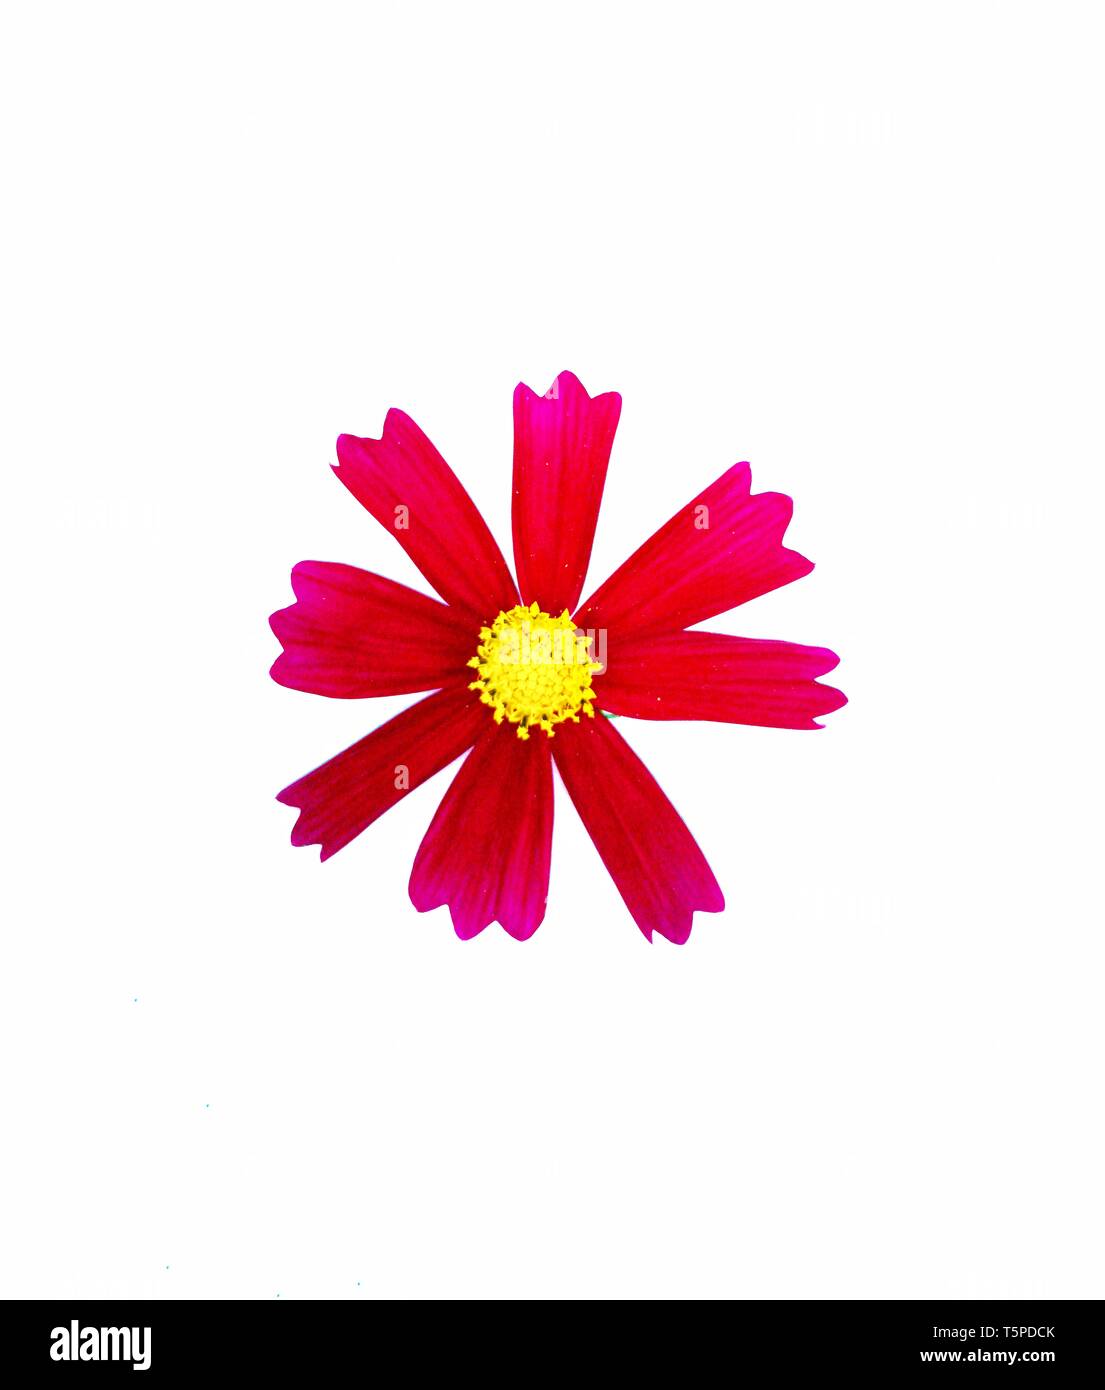 Fleur cosmos rouge Banque de photographies et d'images à haute résolution -  Alamy